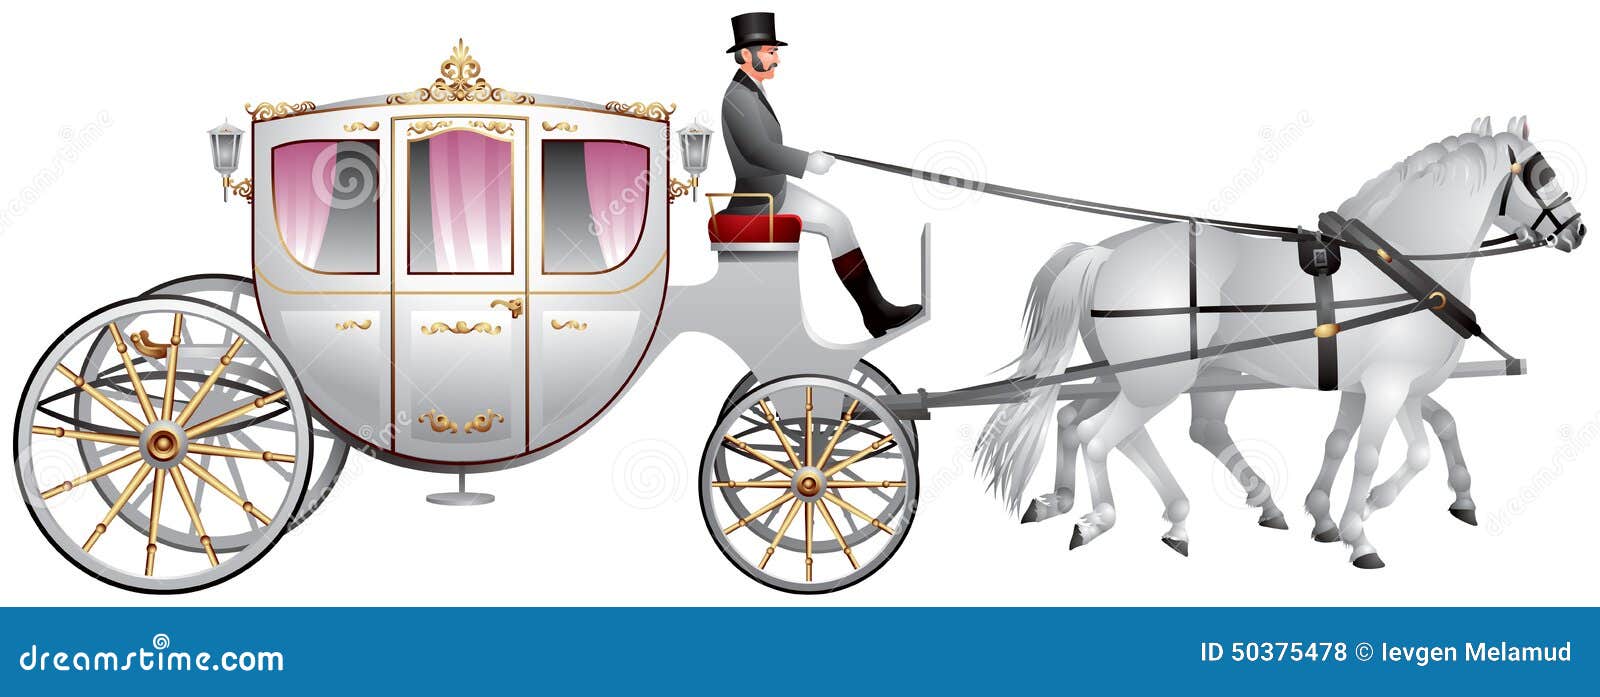 carriage, horse-drawn white wedding crew